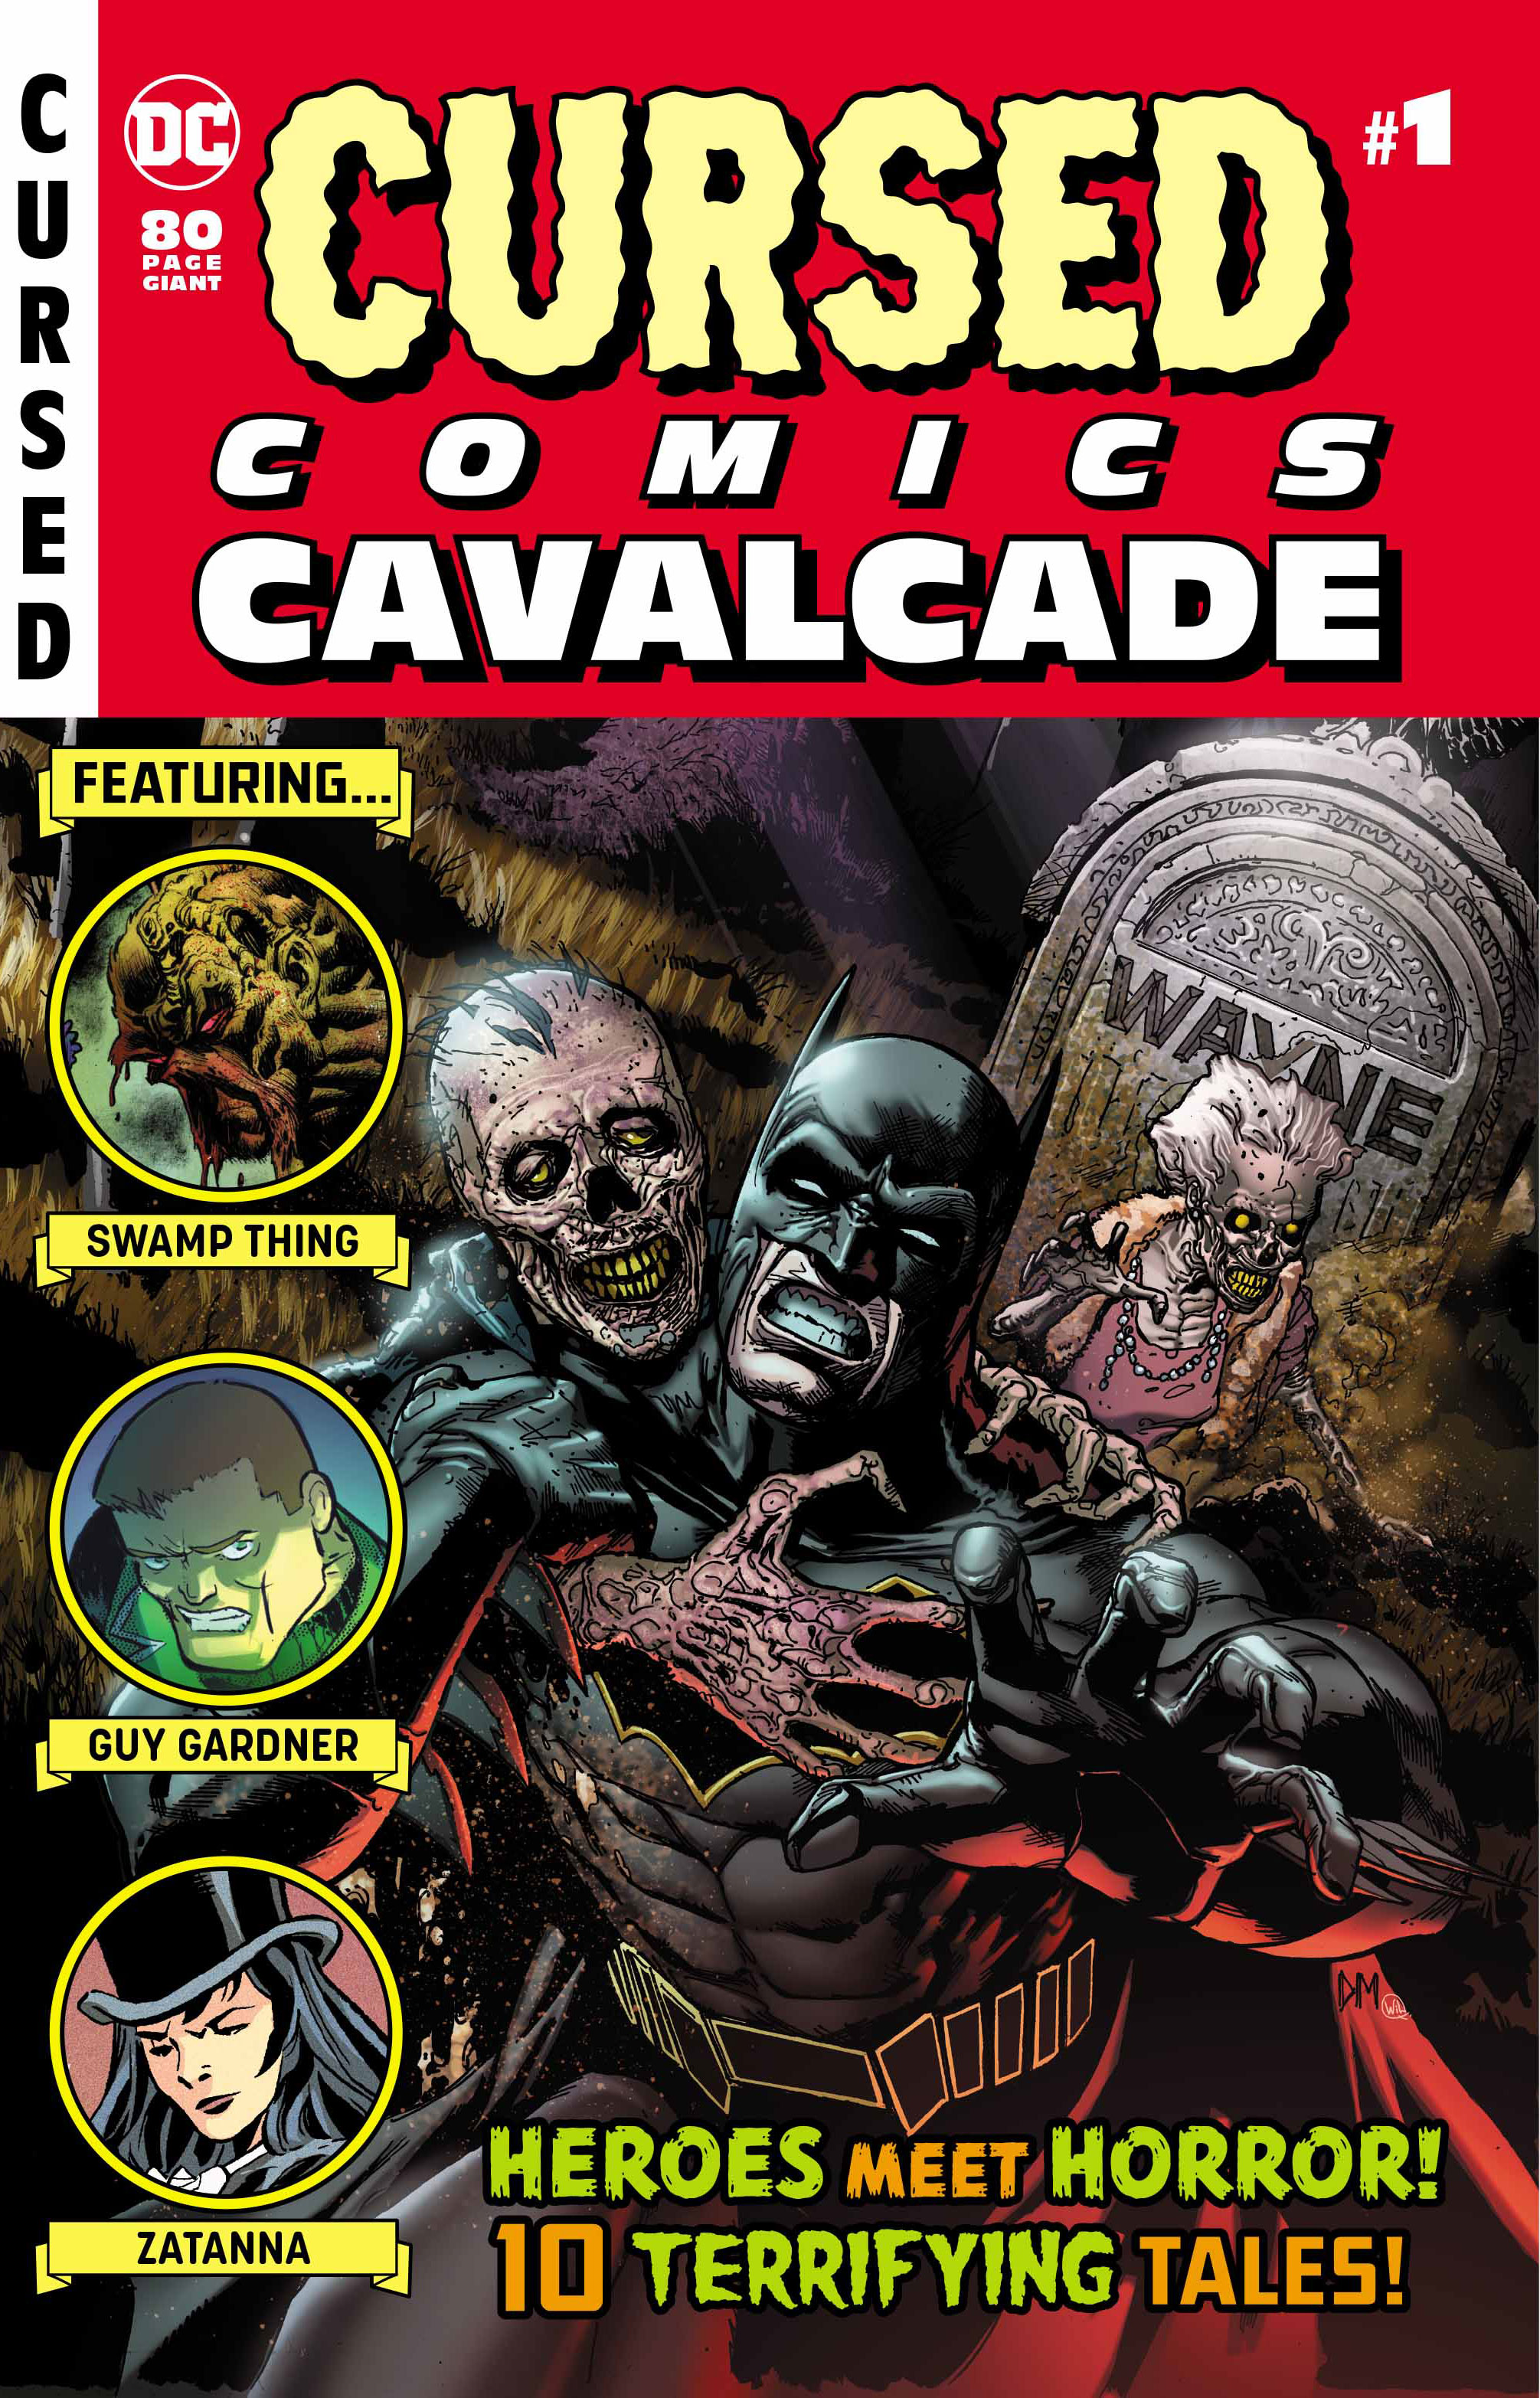 Cursed Comics Cavalcade #1 Review